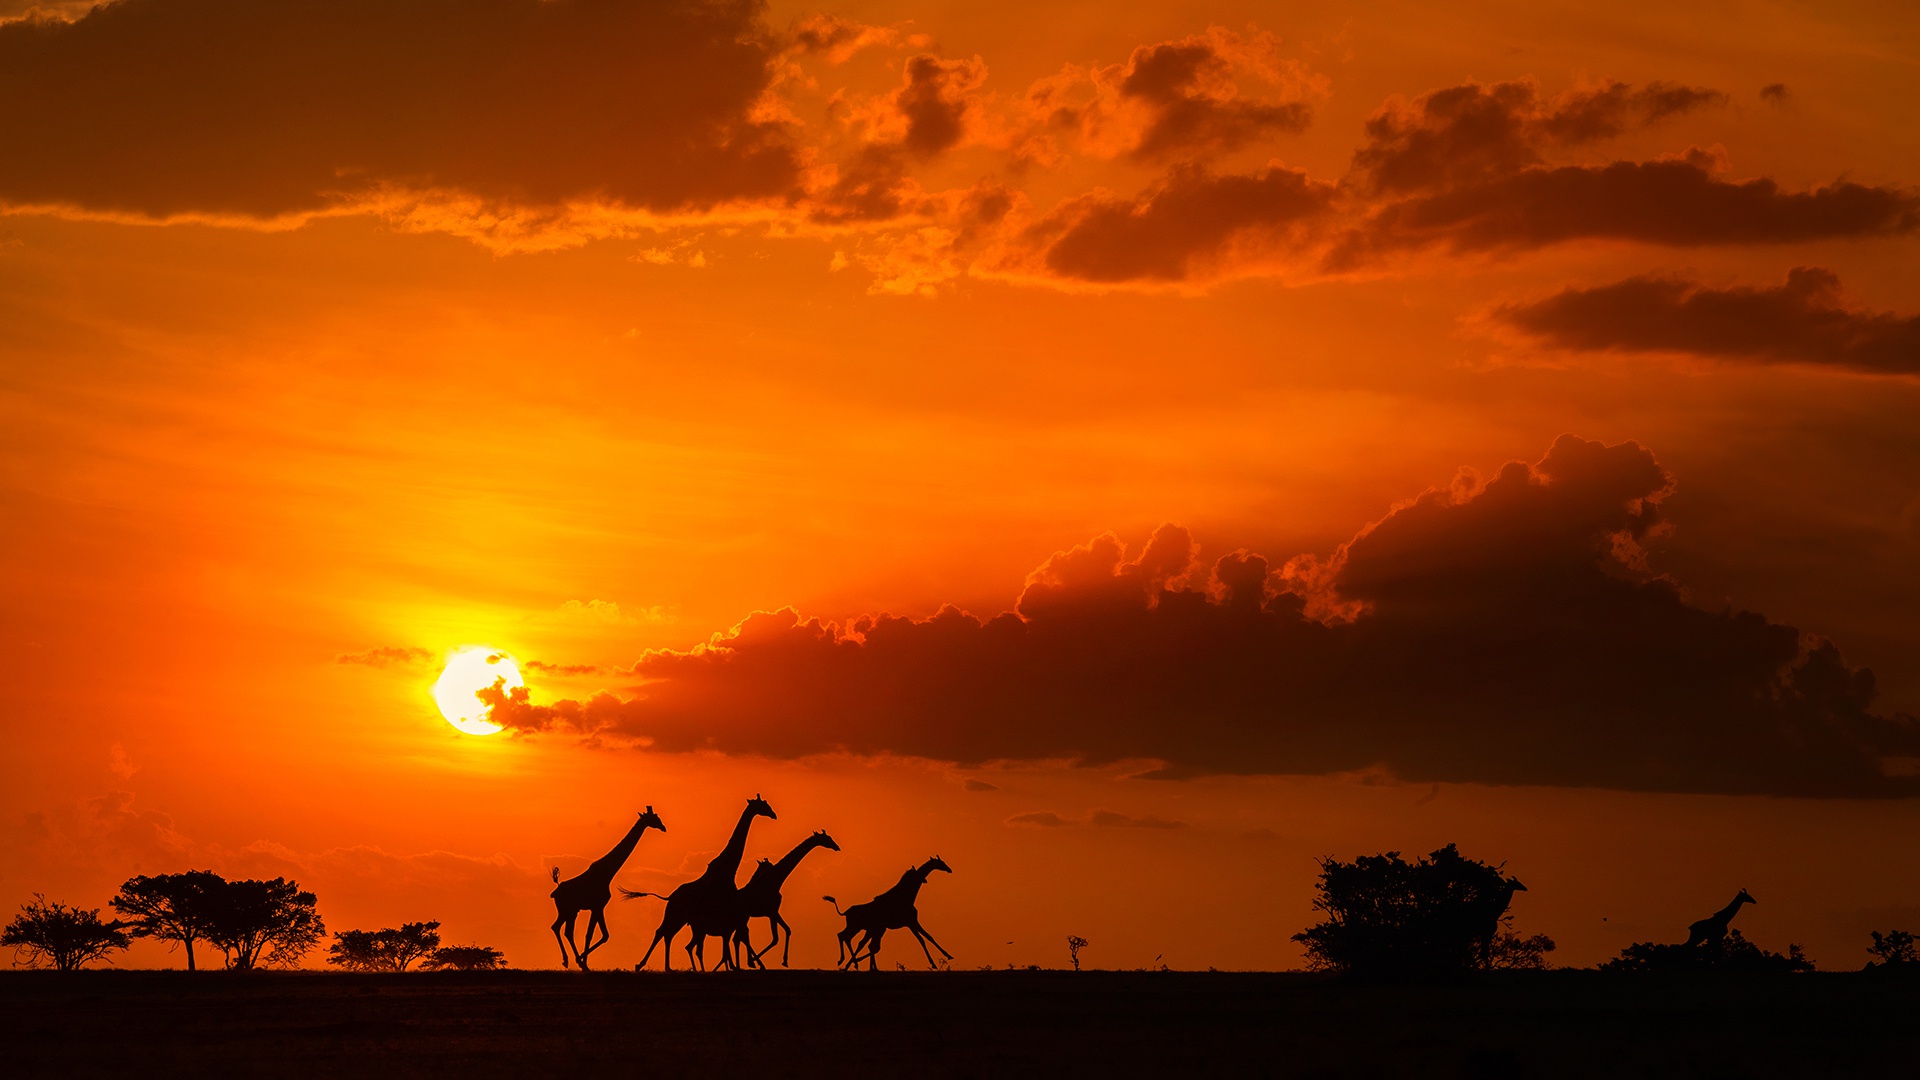 Скачать обои бесплатно Животные, Закат, Саванна, Облака, Силуэт, Африка, Жирафа картинка на рабочий стол ПК